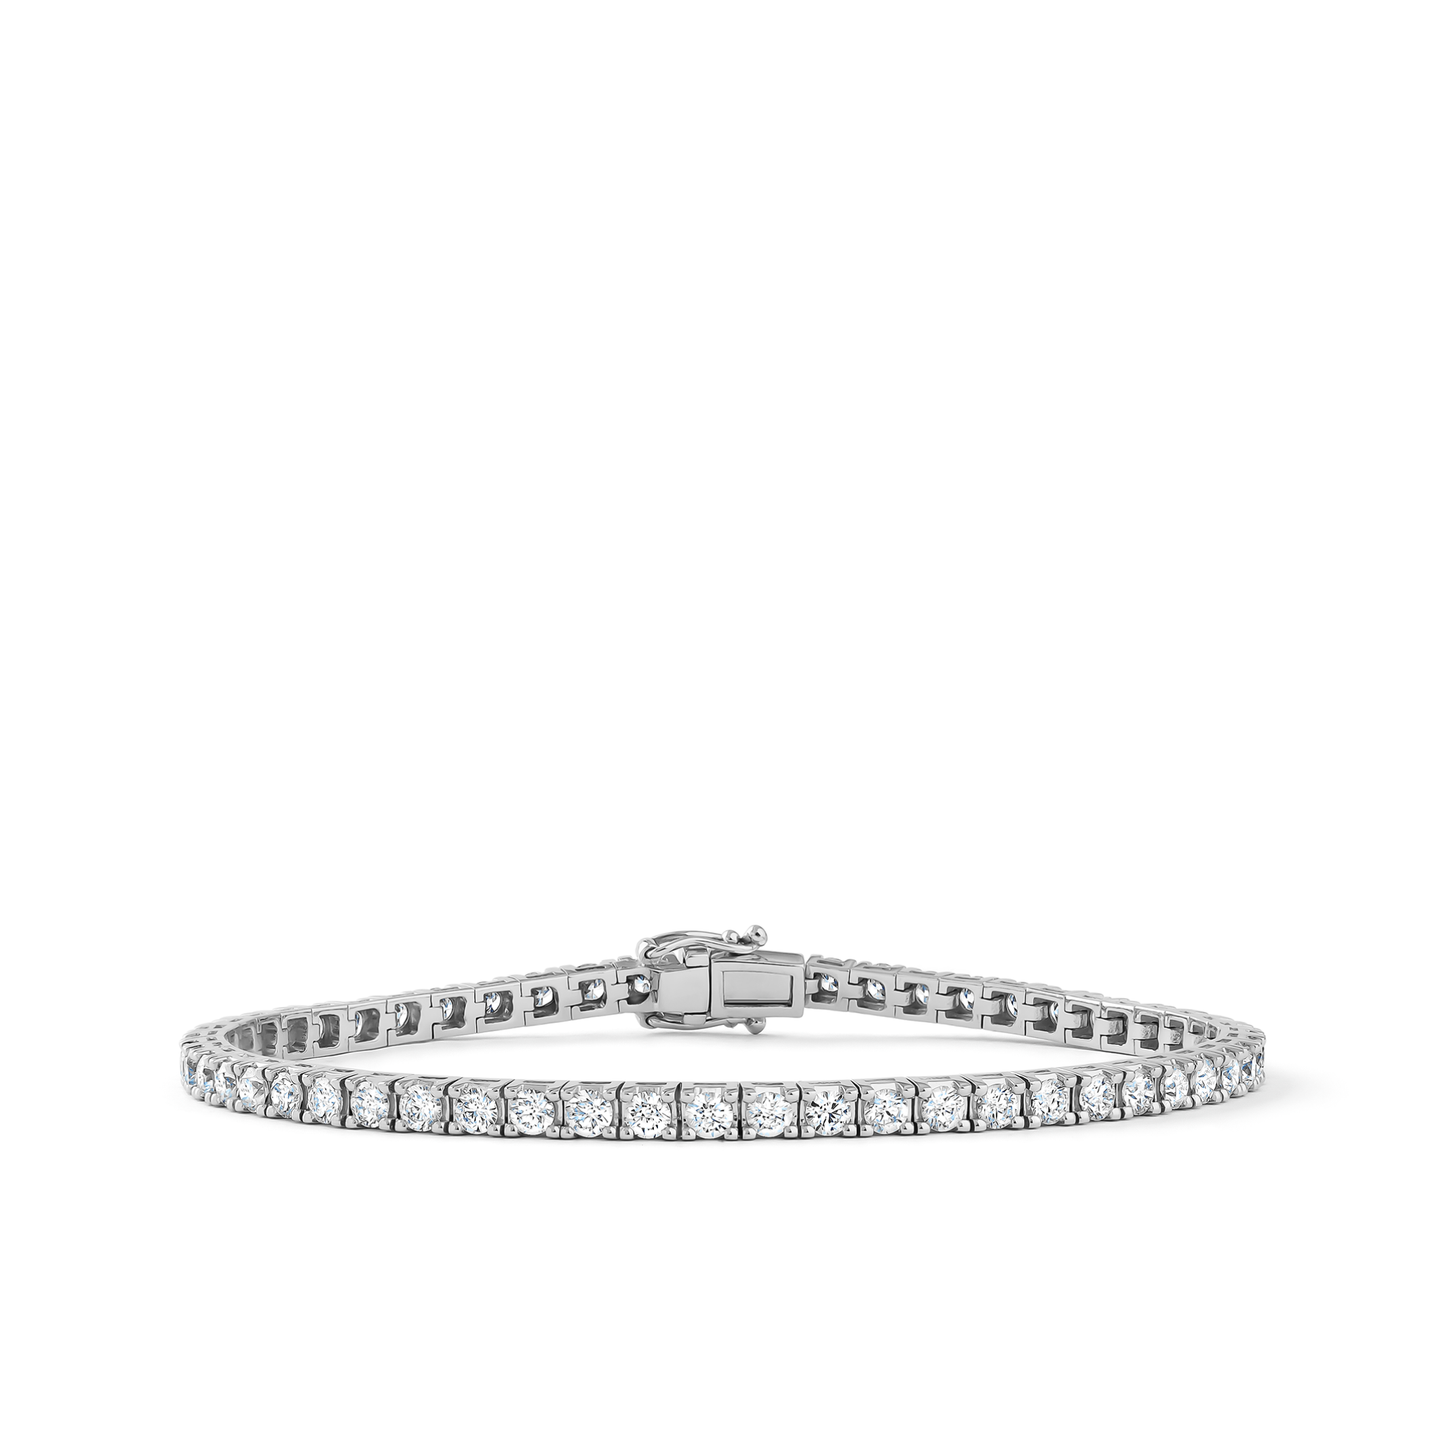 Oliver Heemeyer diamond tennis bracelet 4.0 ct. made of 18k white gold.